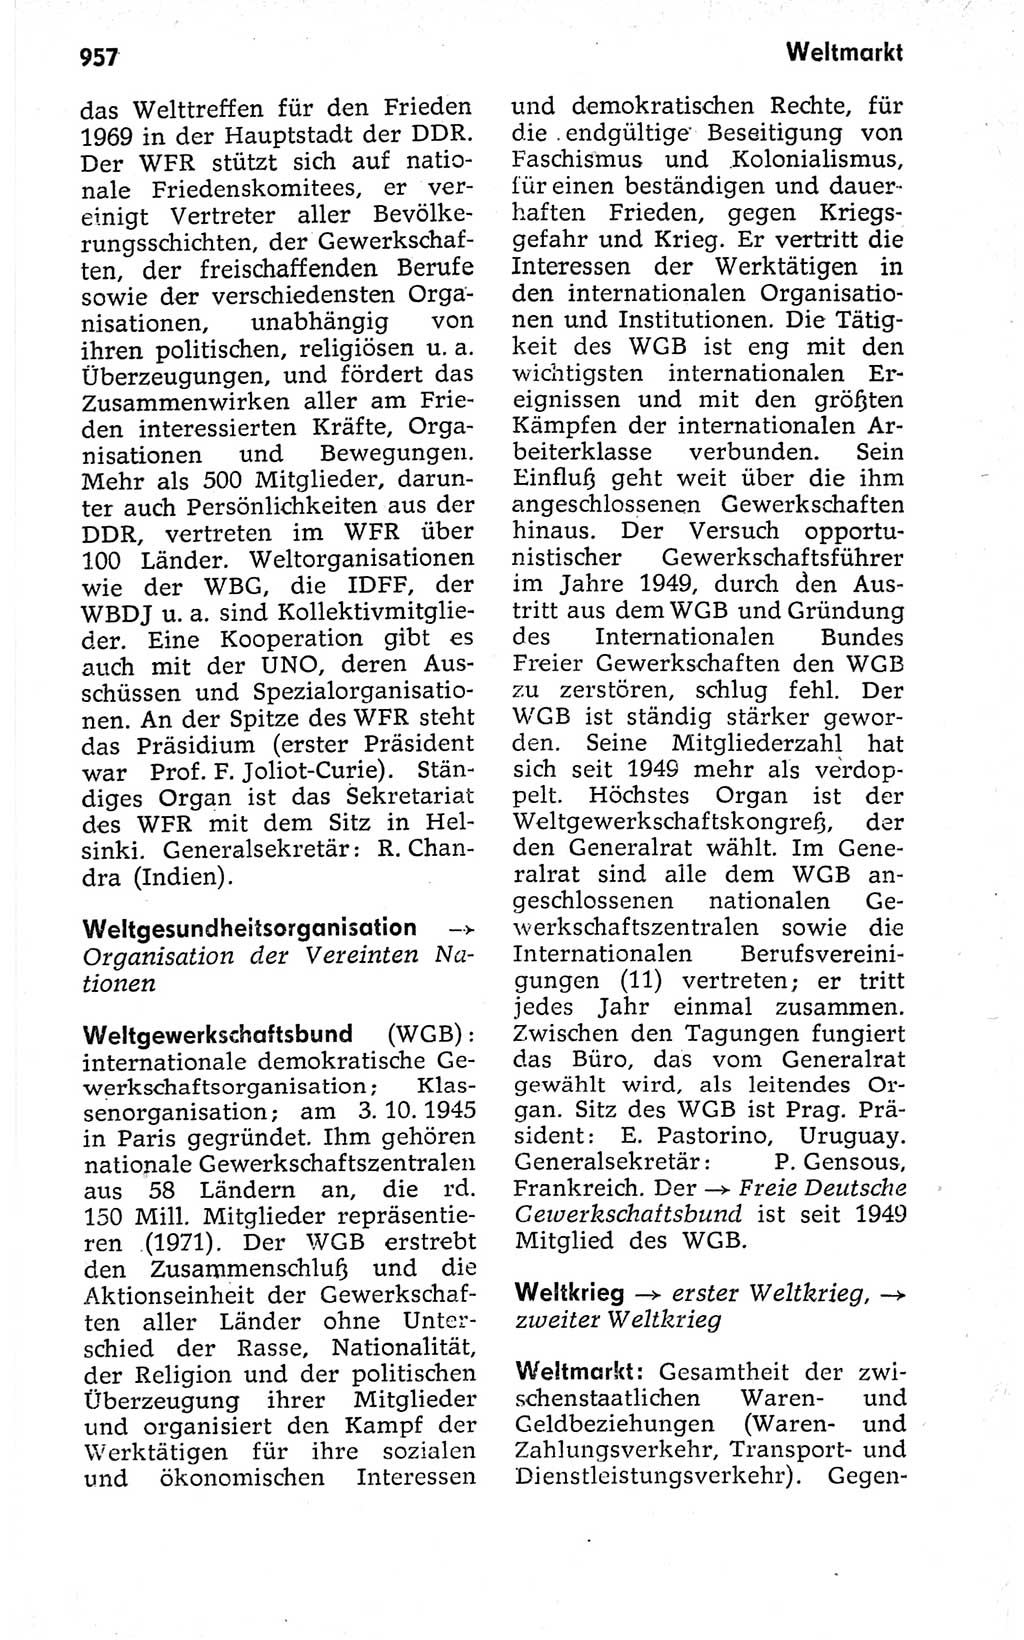 Kleines politisches Wörterbuch [Deutsche Demokratische Republik (DDR)] 1973, Seite 957 (Kl. pol. Wb. DDR 1973, S. 957)